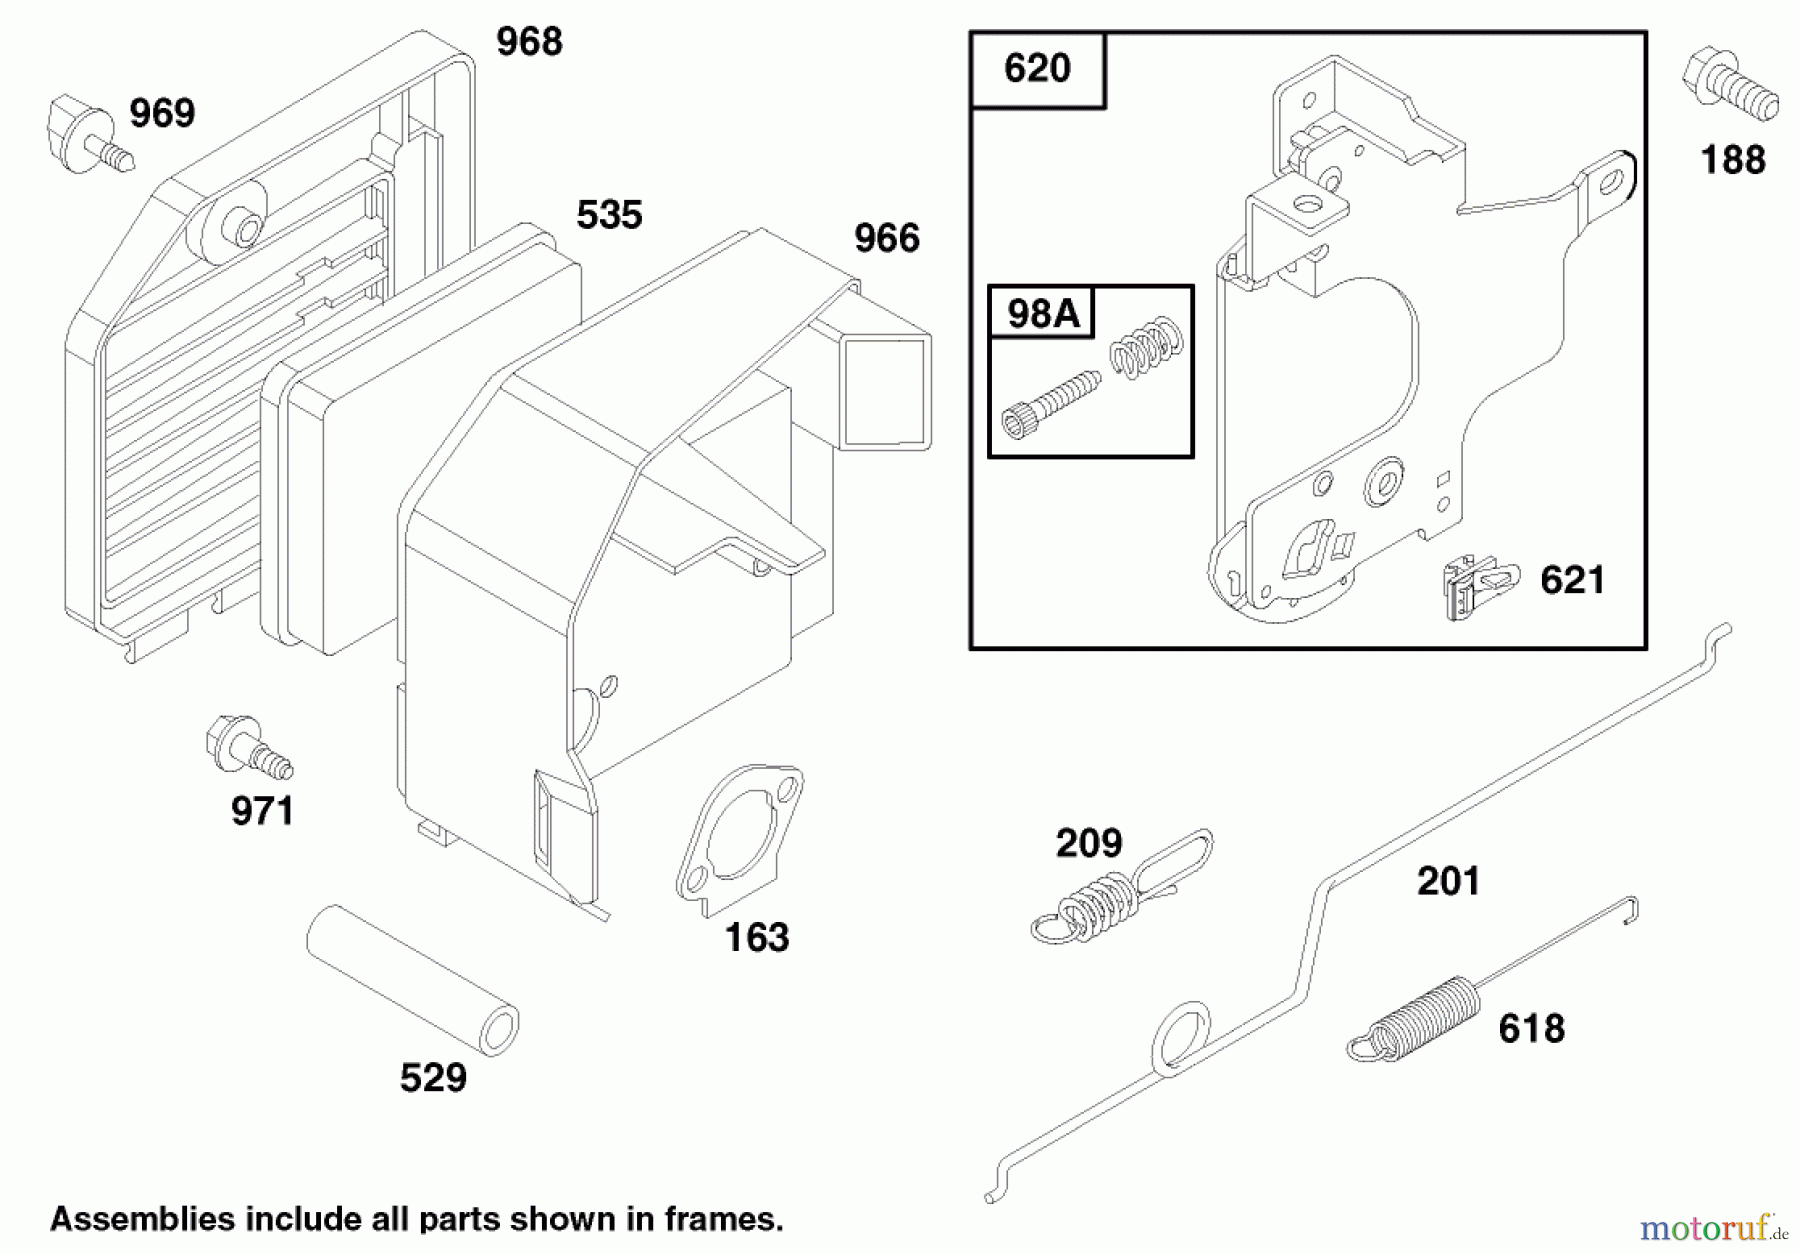  Toro Neu Mowers, Walk-Behind Seite 1 20465 - Toro Super Recycler Mower, 1997 (790000001-799999999) ENGINE GTS 150 #4